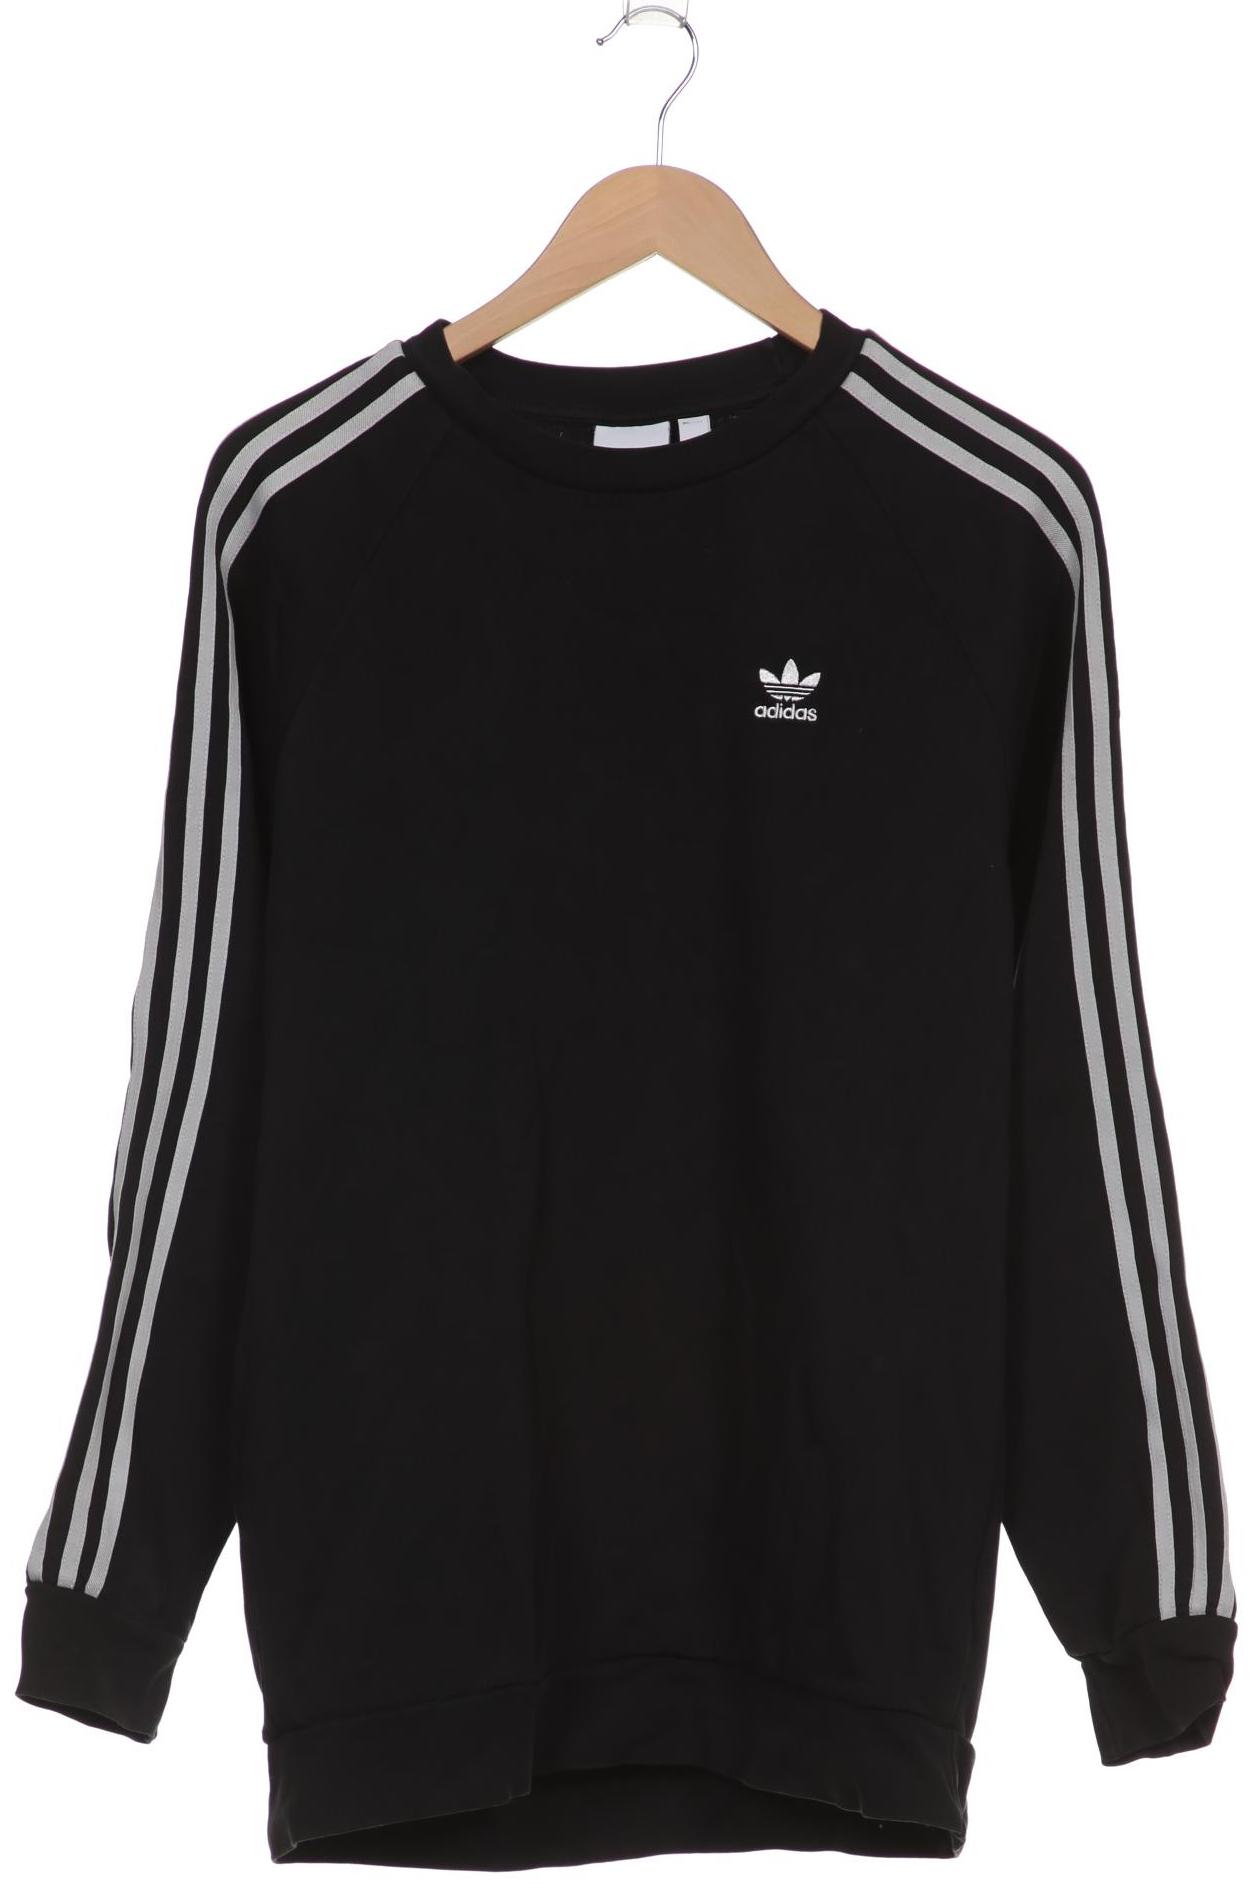 adidas Originals Herren Sweatshirt, schwarz von adidas Originals